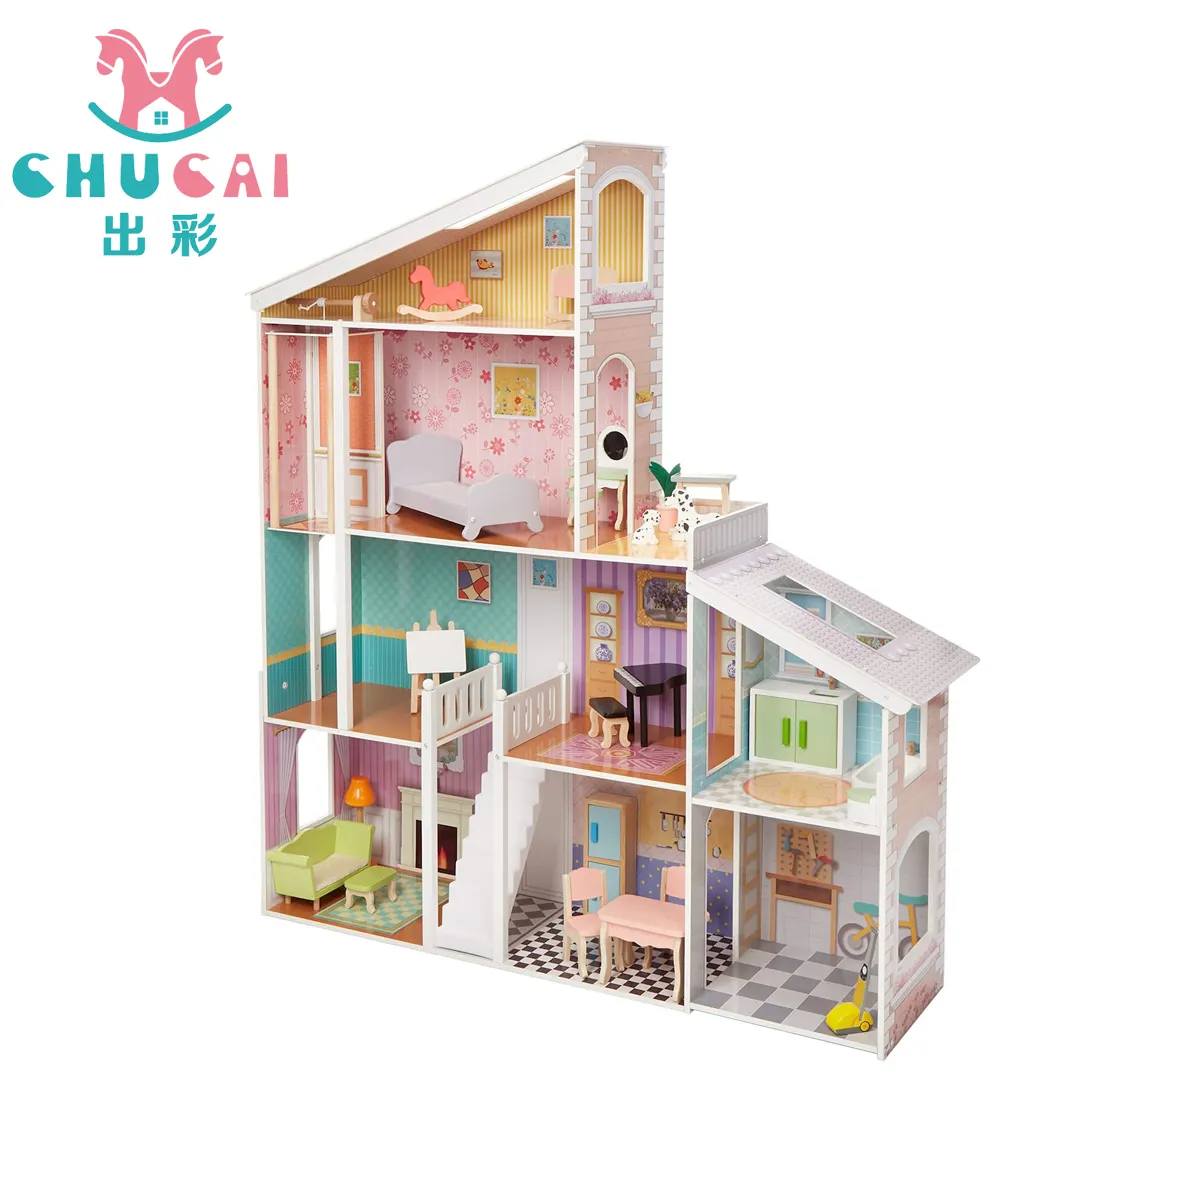 Nuovo arrivo finta giochi di ruolo mobili giocattoli bambini casa delle bambole in legno per ragazze regalo